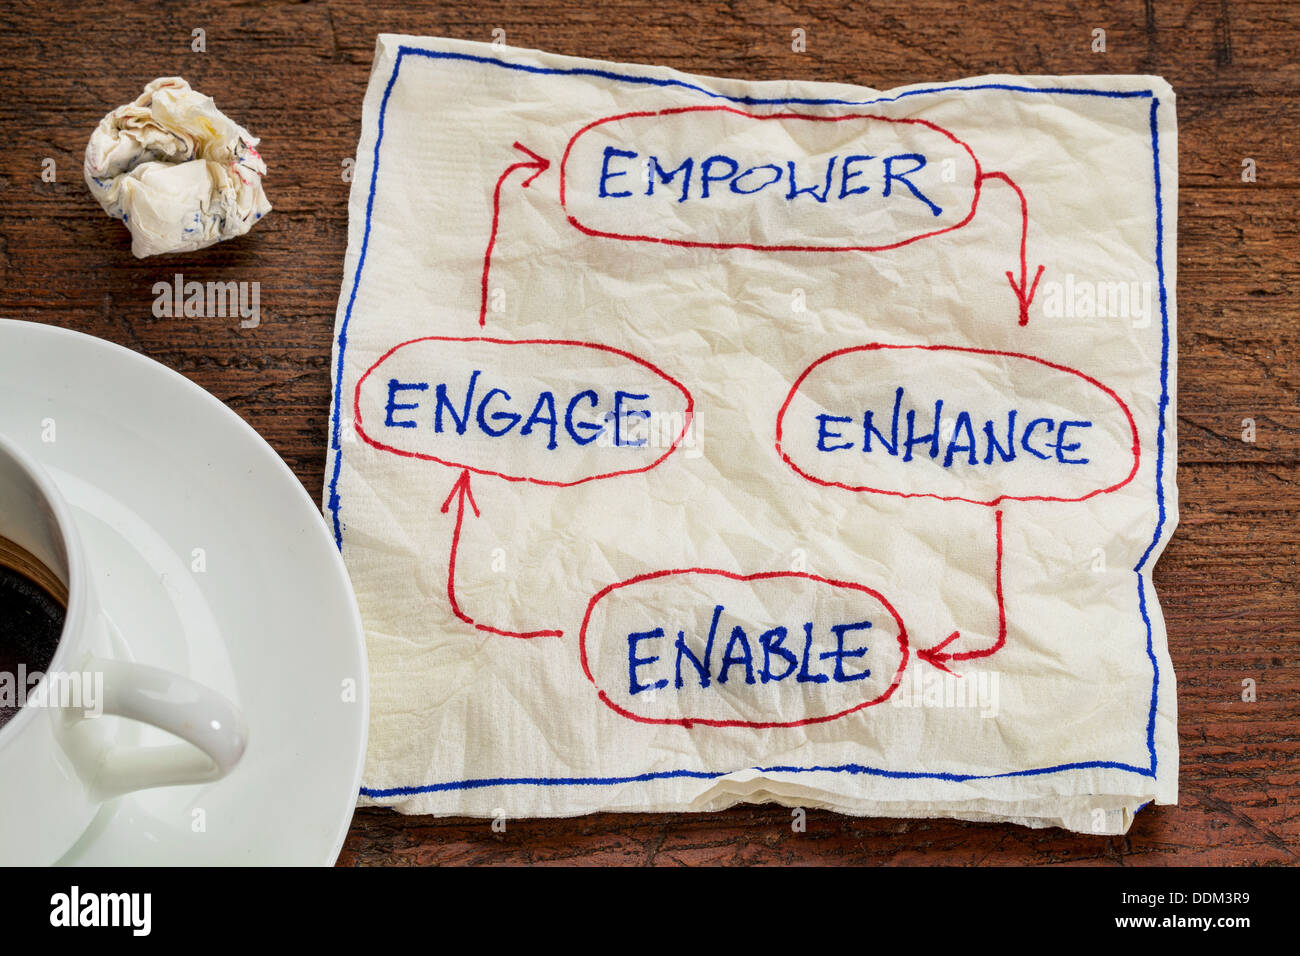 Empower, migliorare, abilitare e impegnarsi - Concetto aziendale - igienico doodle con una tazza di caffè Foto Stock